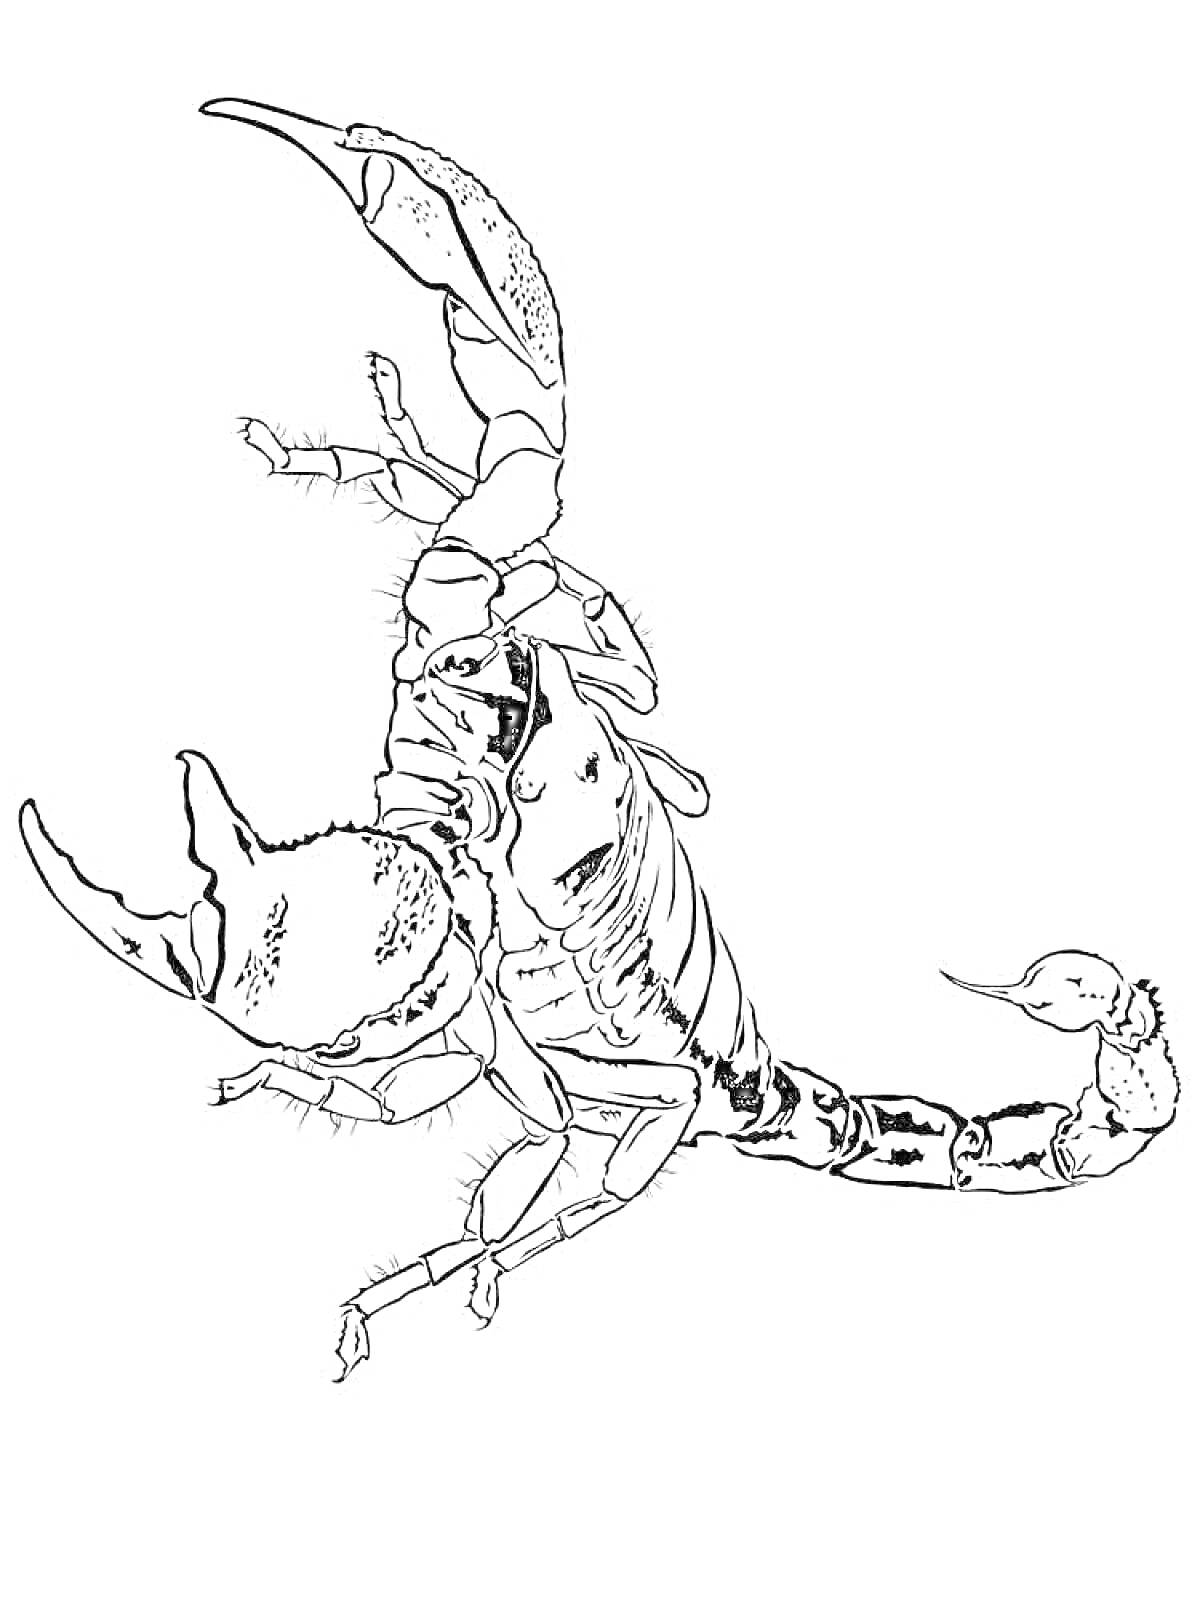 Раскраска Скорпион с поднятыми клешнями и хвостом